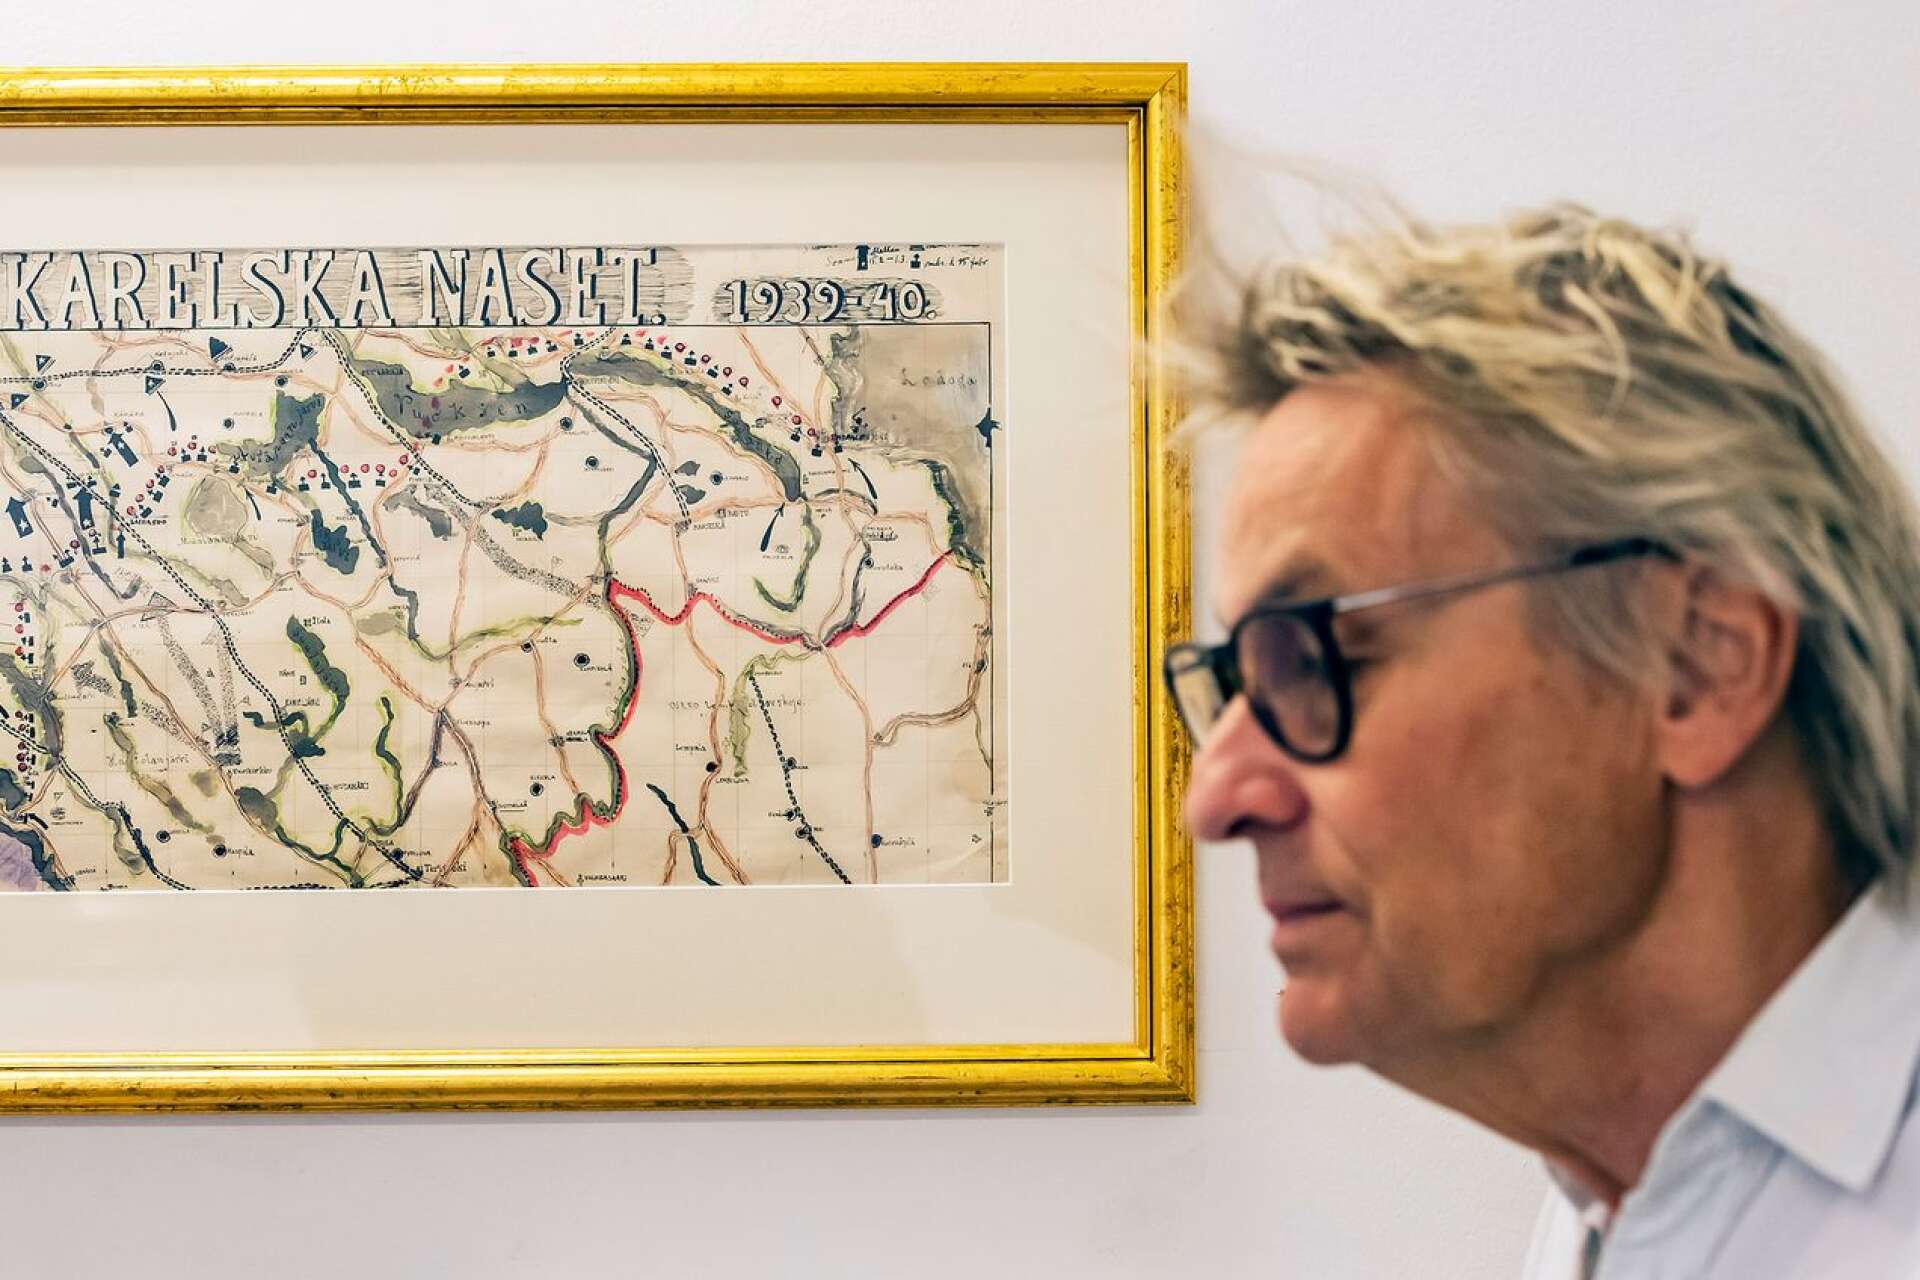 Ragnar Sandberg var intresserad av historiska slag och gjorde kartor. ”Det var något av en hobby för honom tror jag”, säger Lars Lerin. 